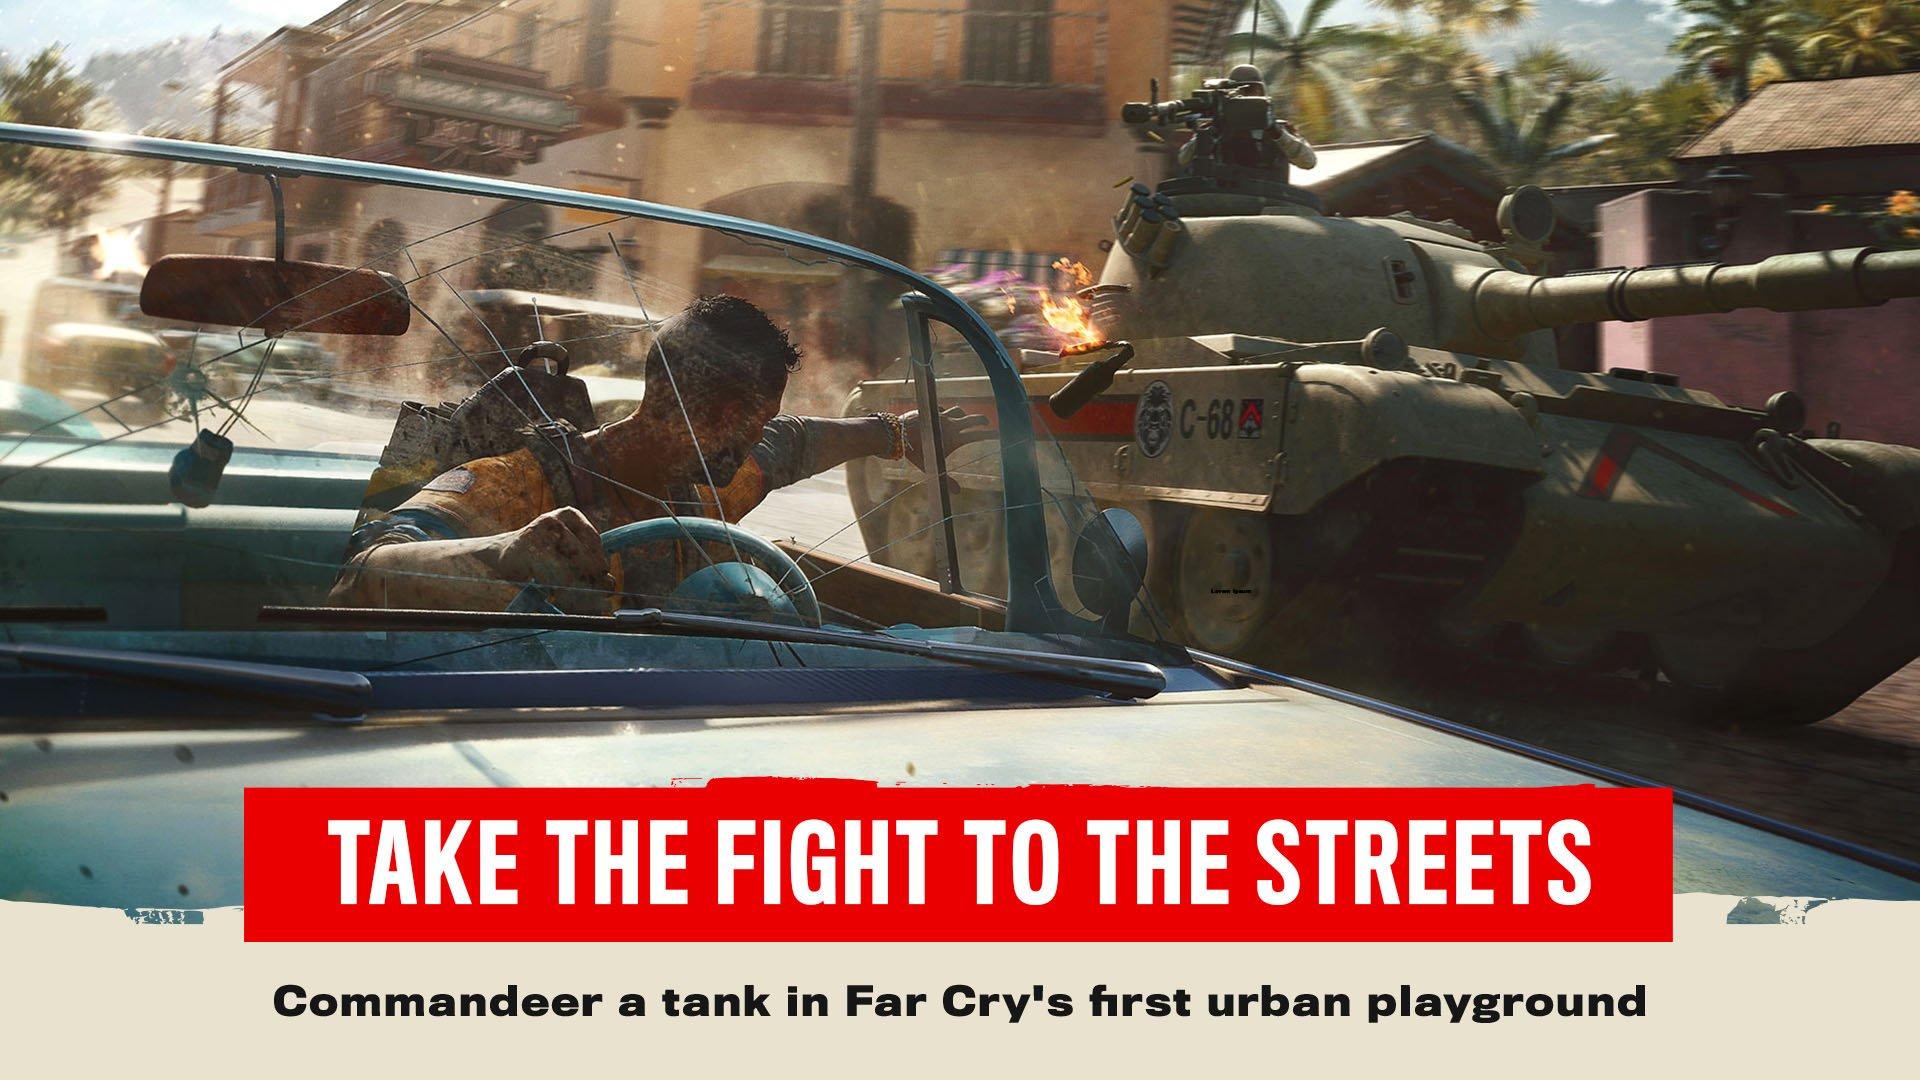 Far Cry 5 - Xbox One Standard Edition